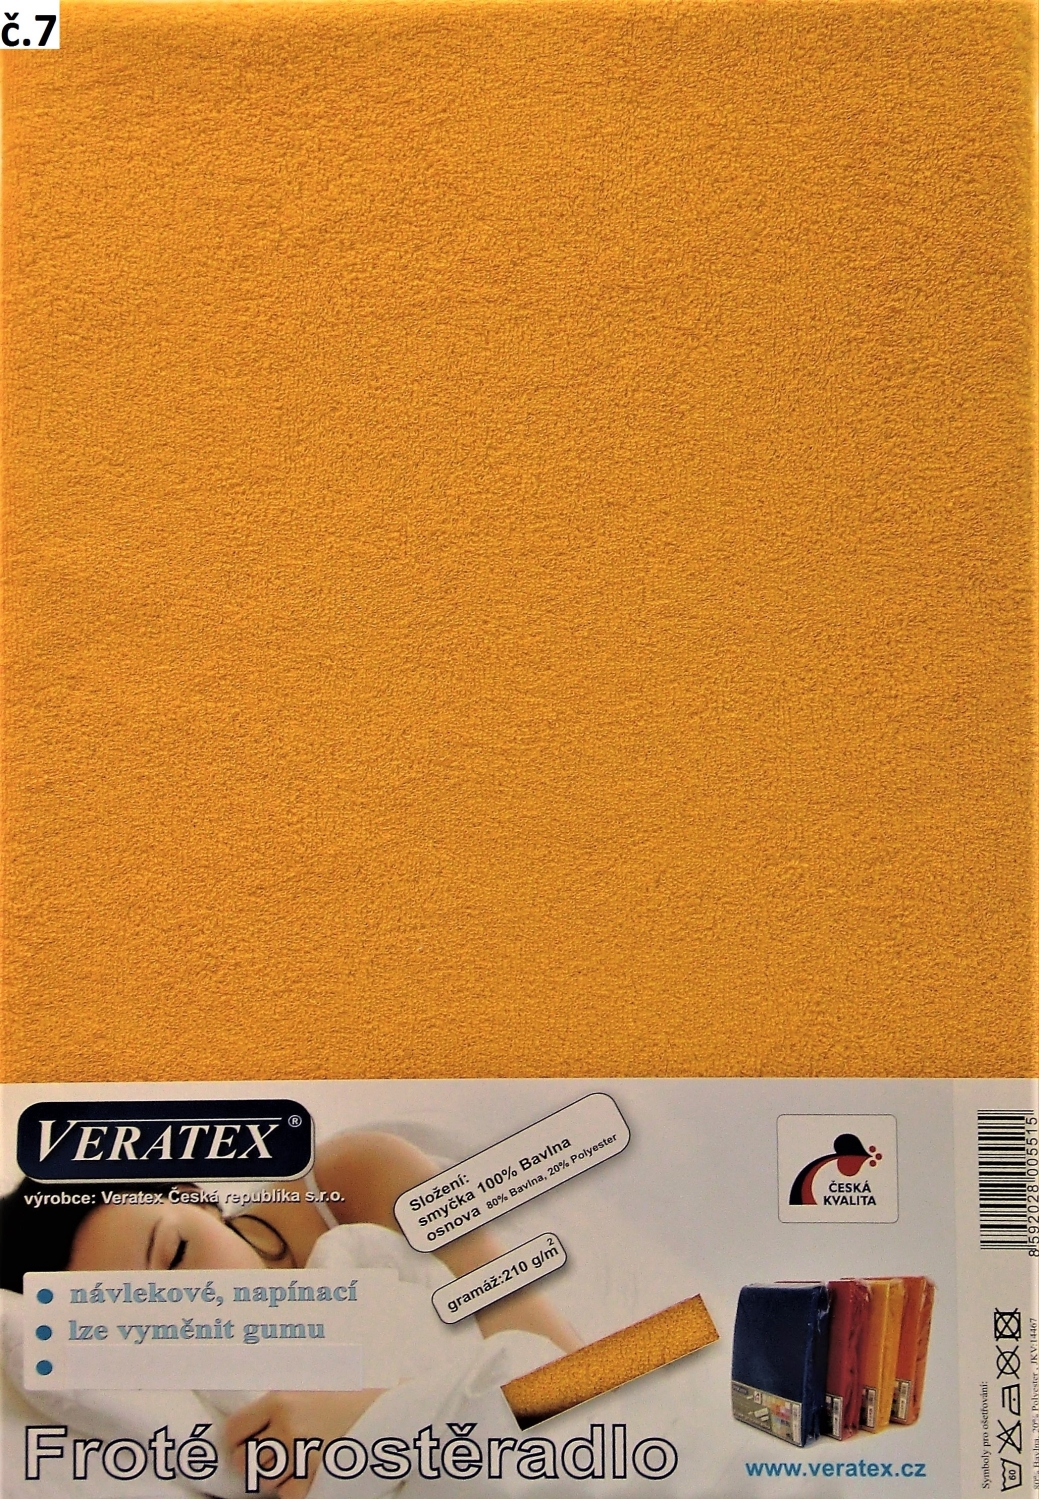 Veratex Froté prostěradlo 130x200/16 cm (č. 7-sytě žlutá)